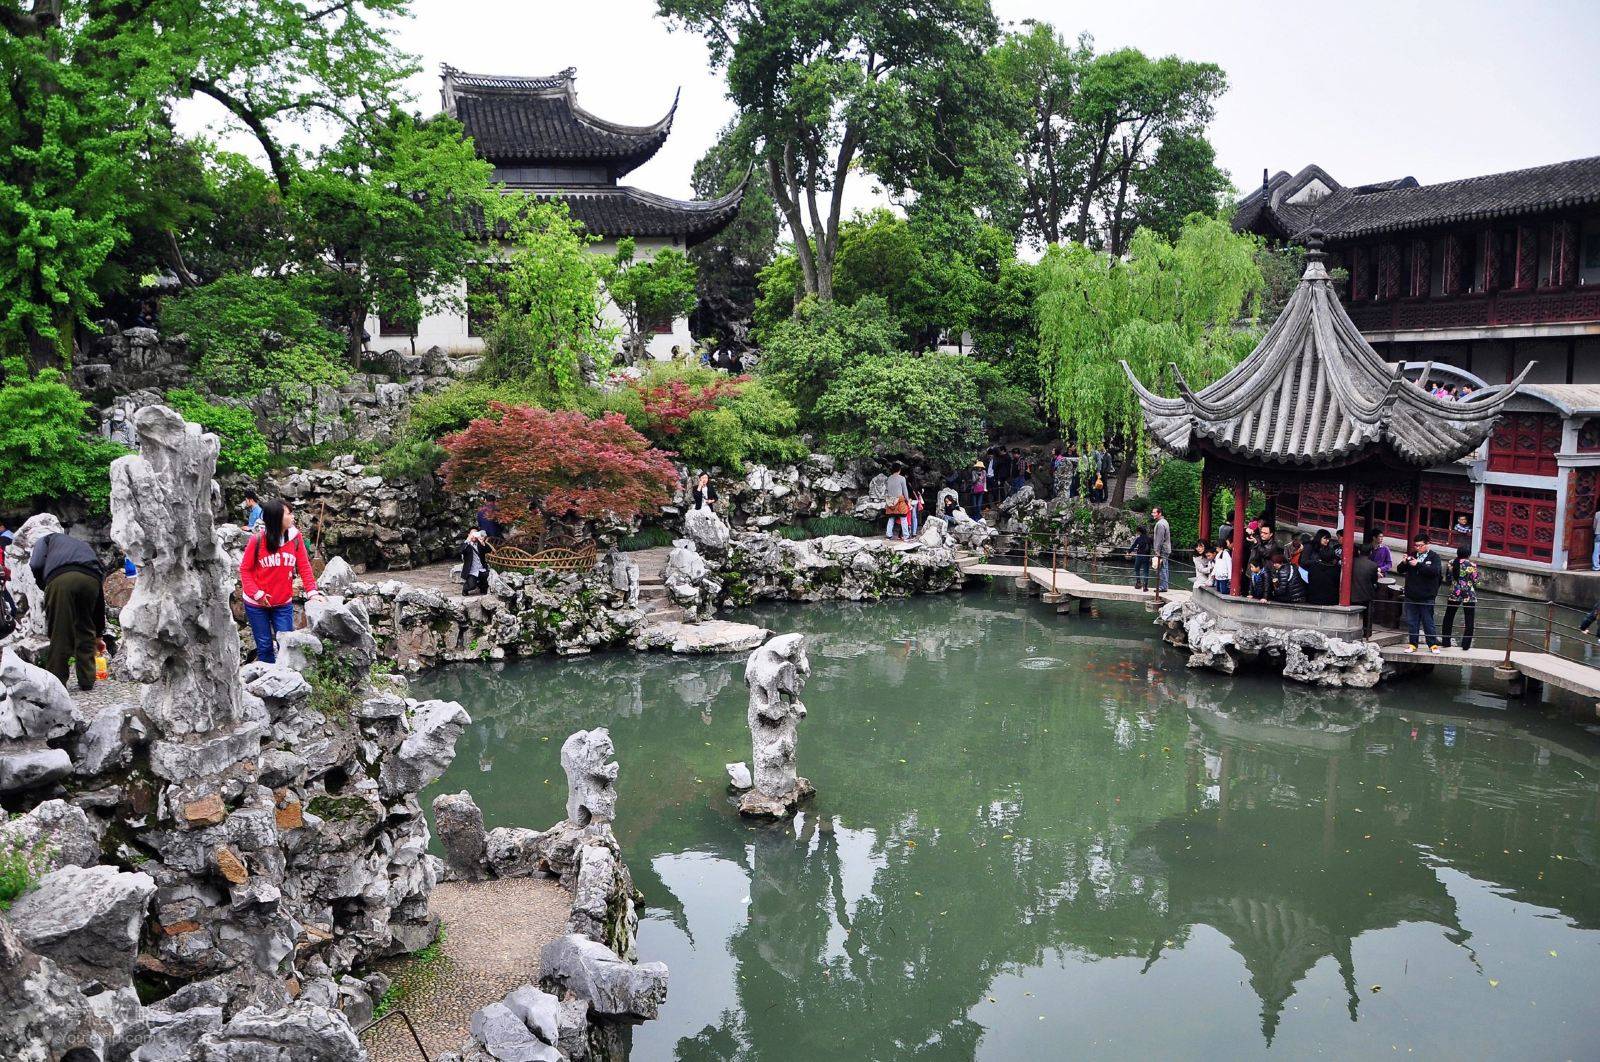 苏州的寺庙园林，亭台水榭精致漂亮，园内石峰状如狮子，值得一去